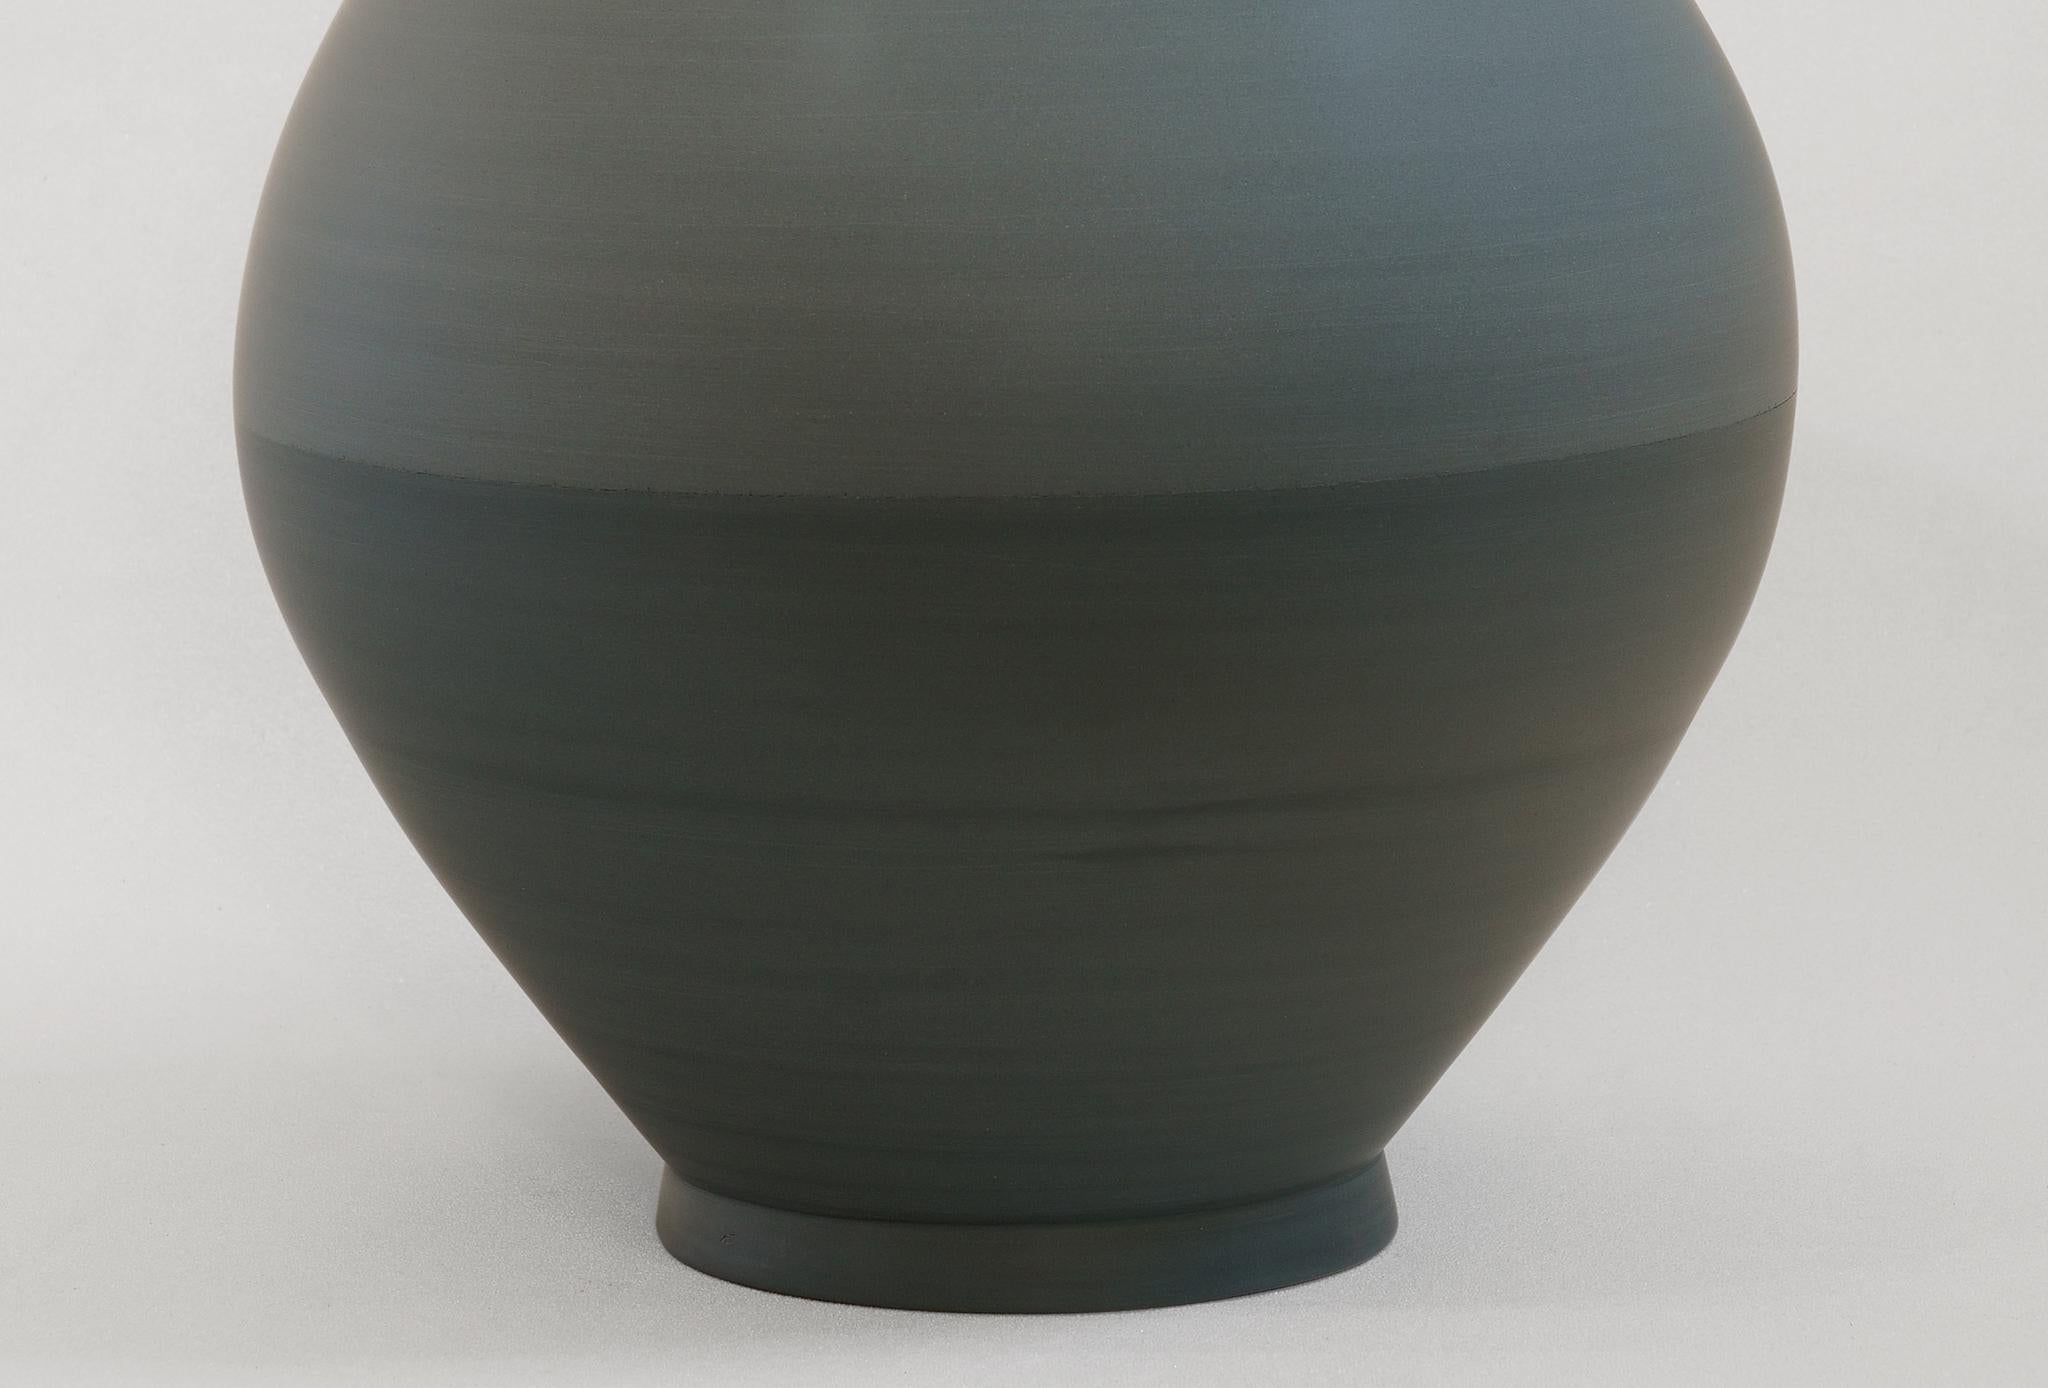 German Half Half Vase by Jung Hong